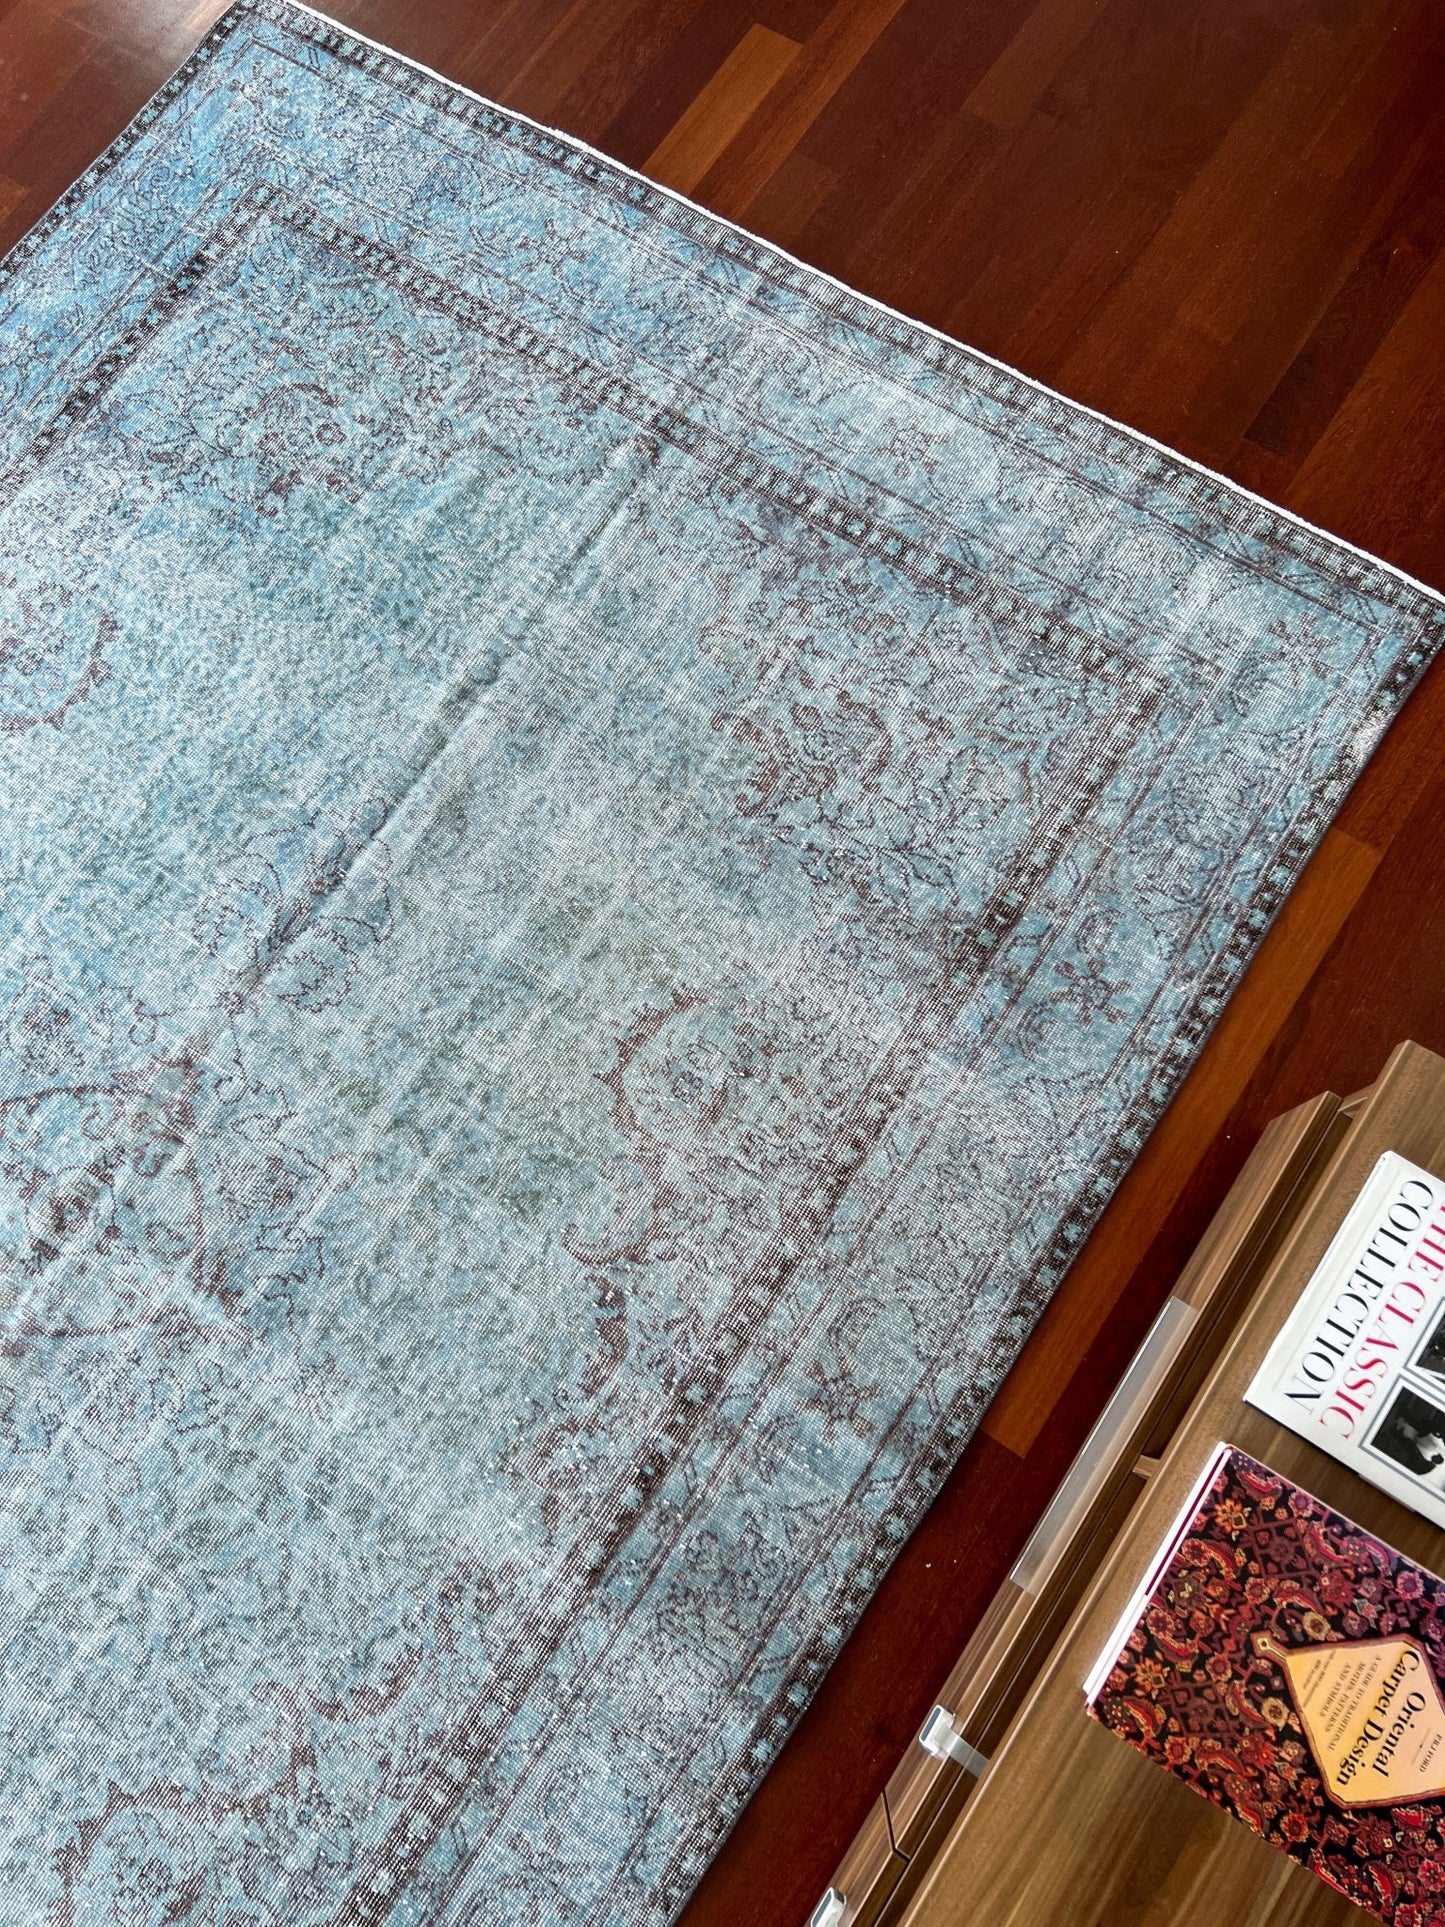 indigo blue distressed turkish rug shop san francisco bay area. Vintage rug palo alto berkeley rug shop online